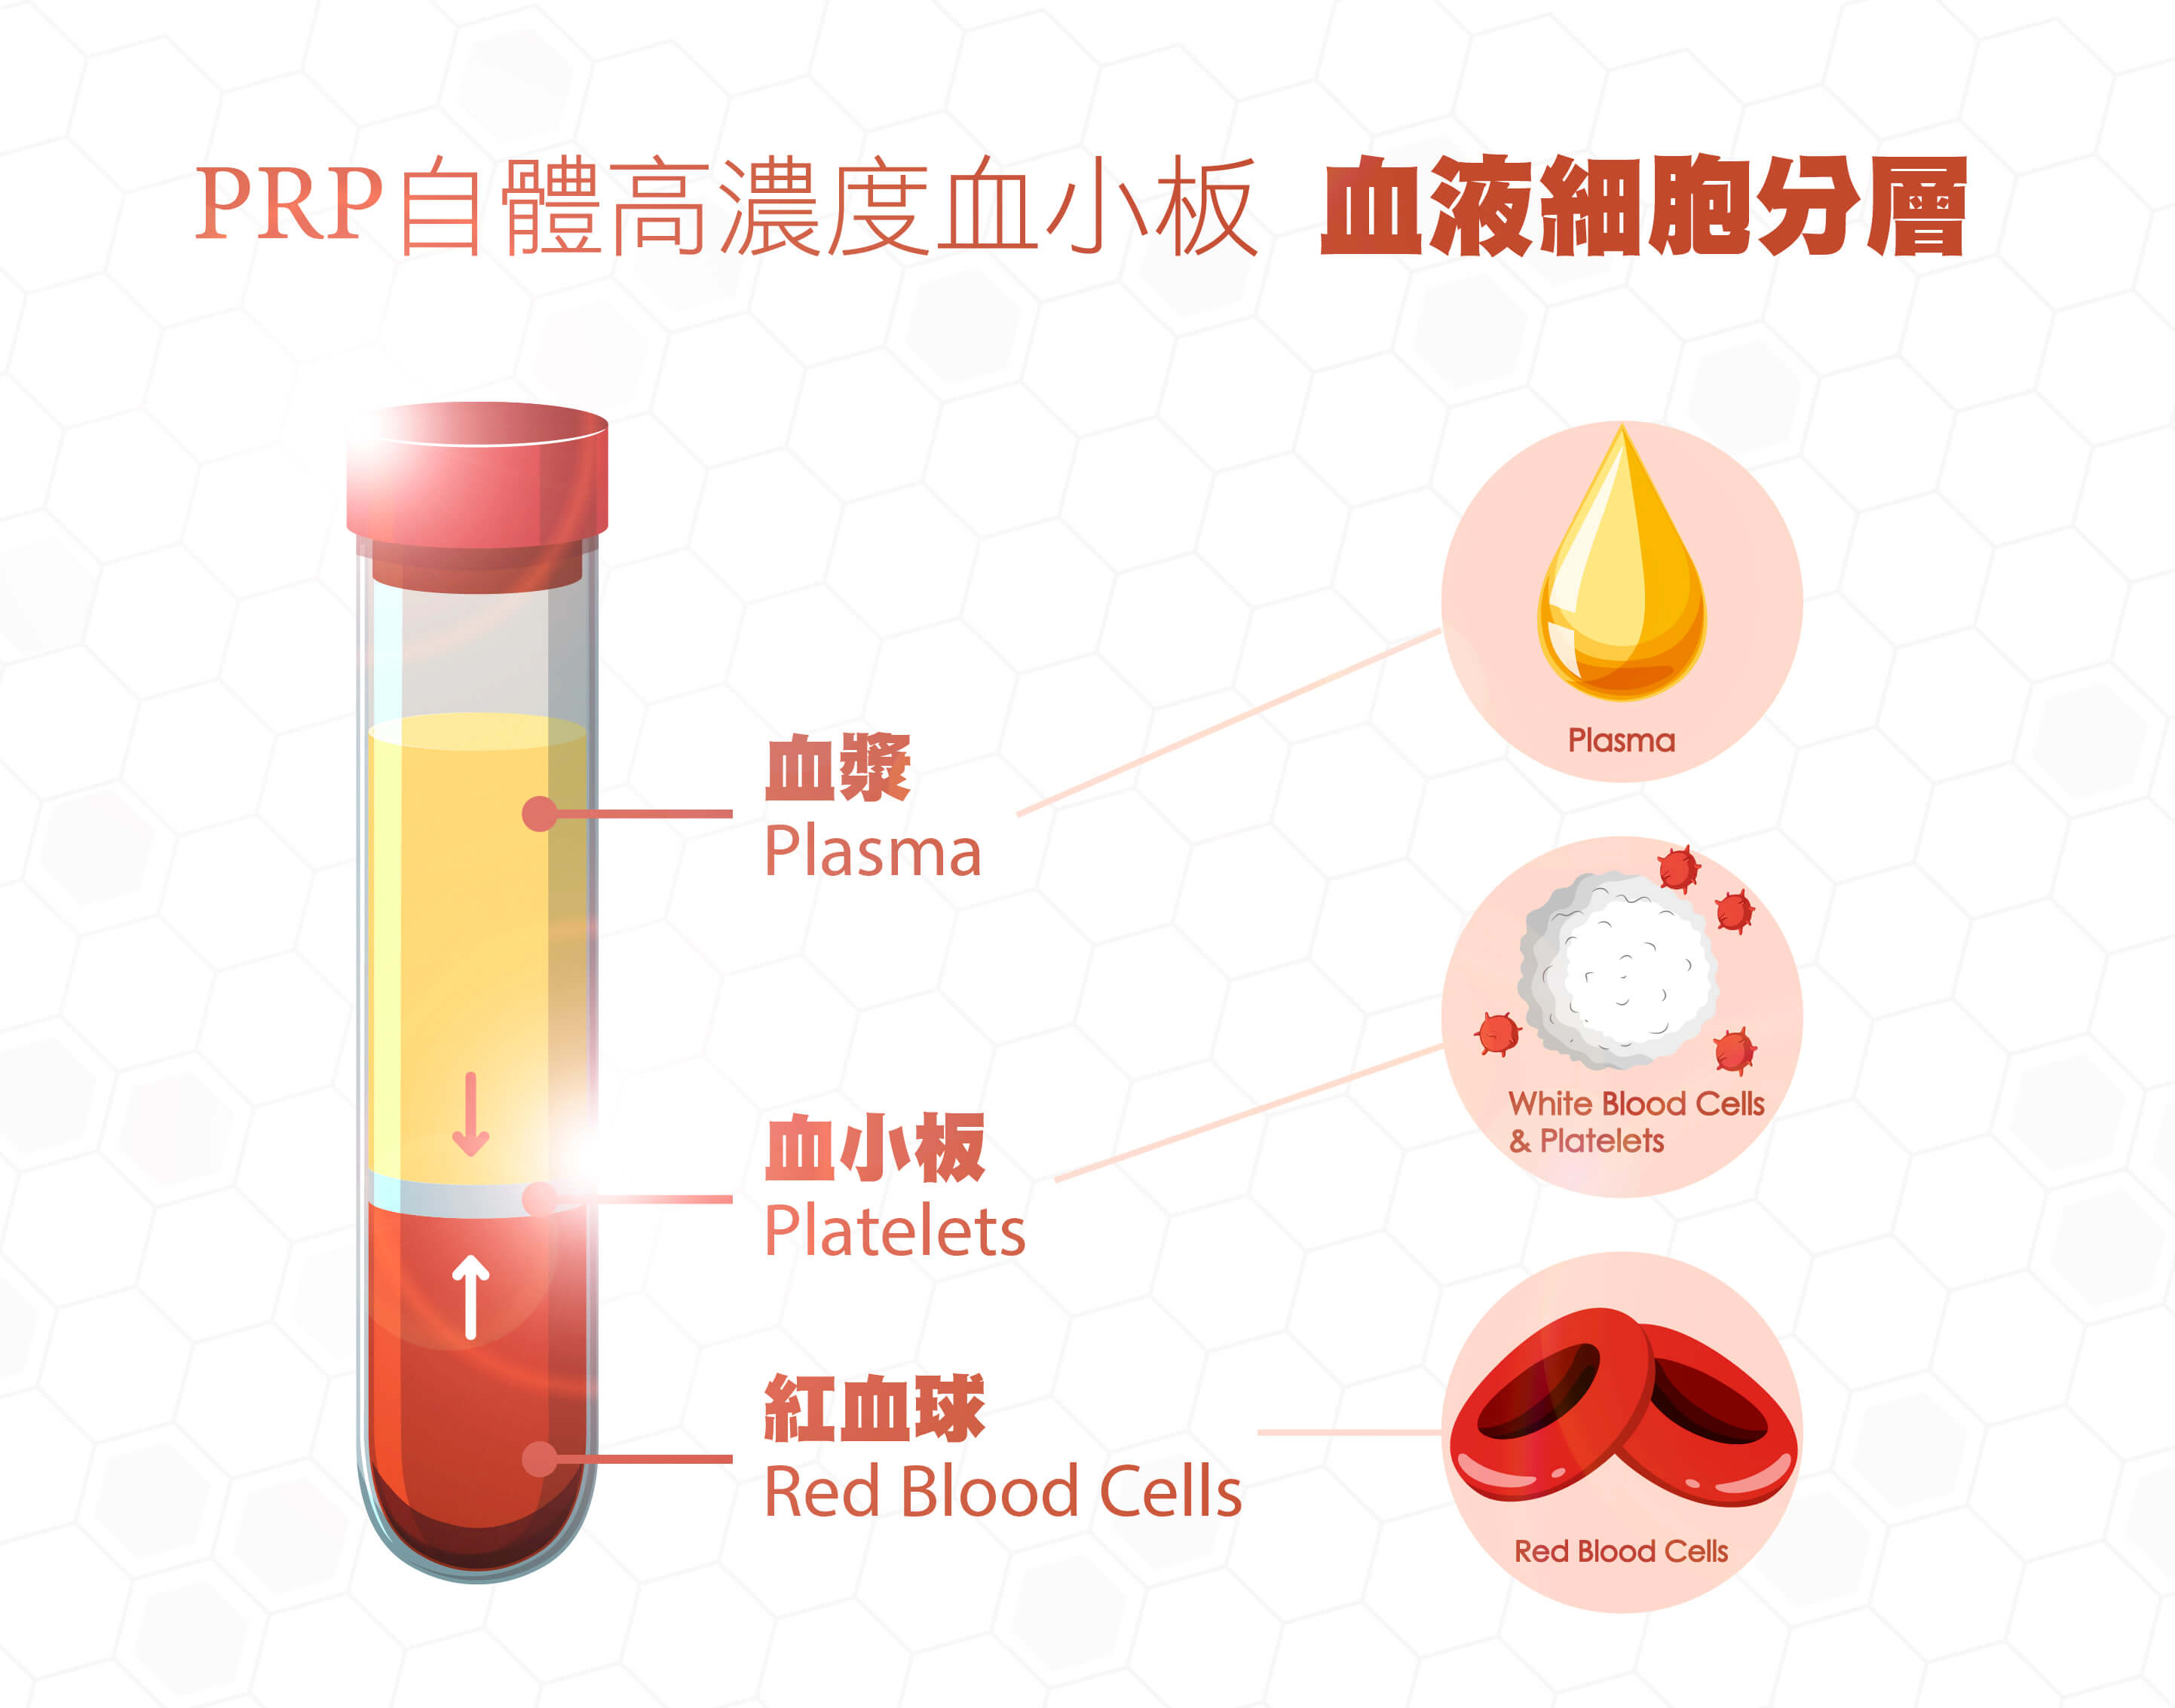 plasma)即是运用自体抽出的血液经由特殊纯化离心,将血液细胞成份分层